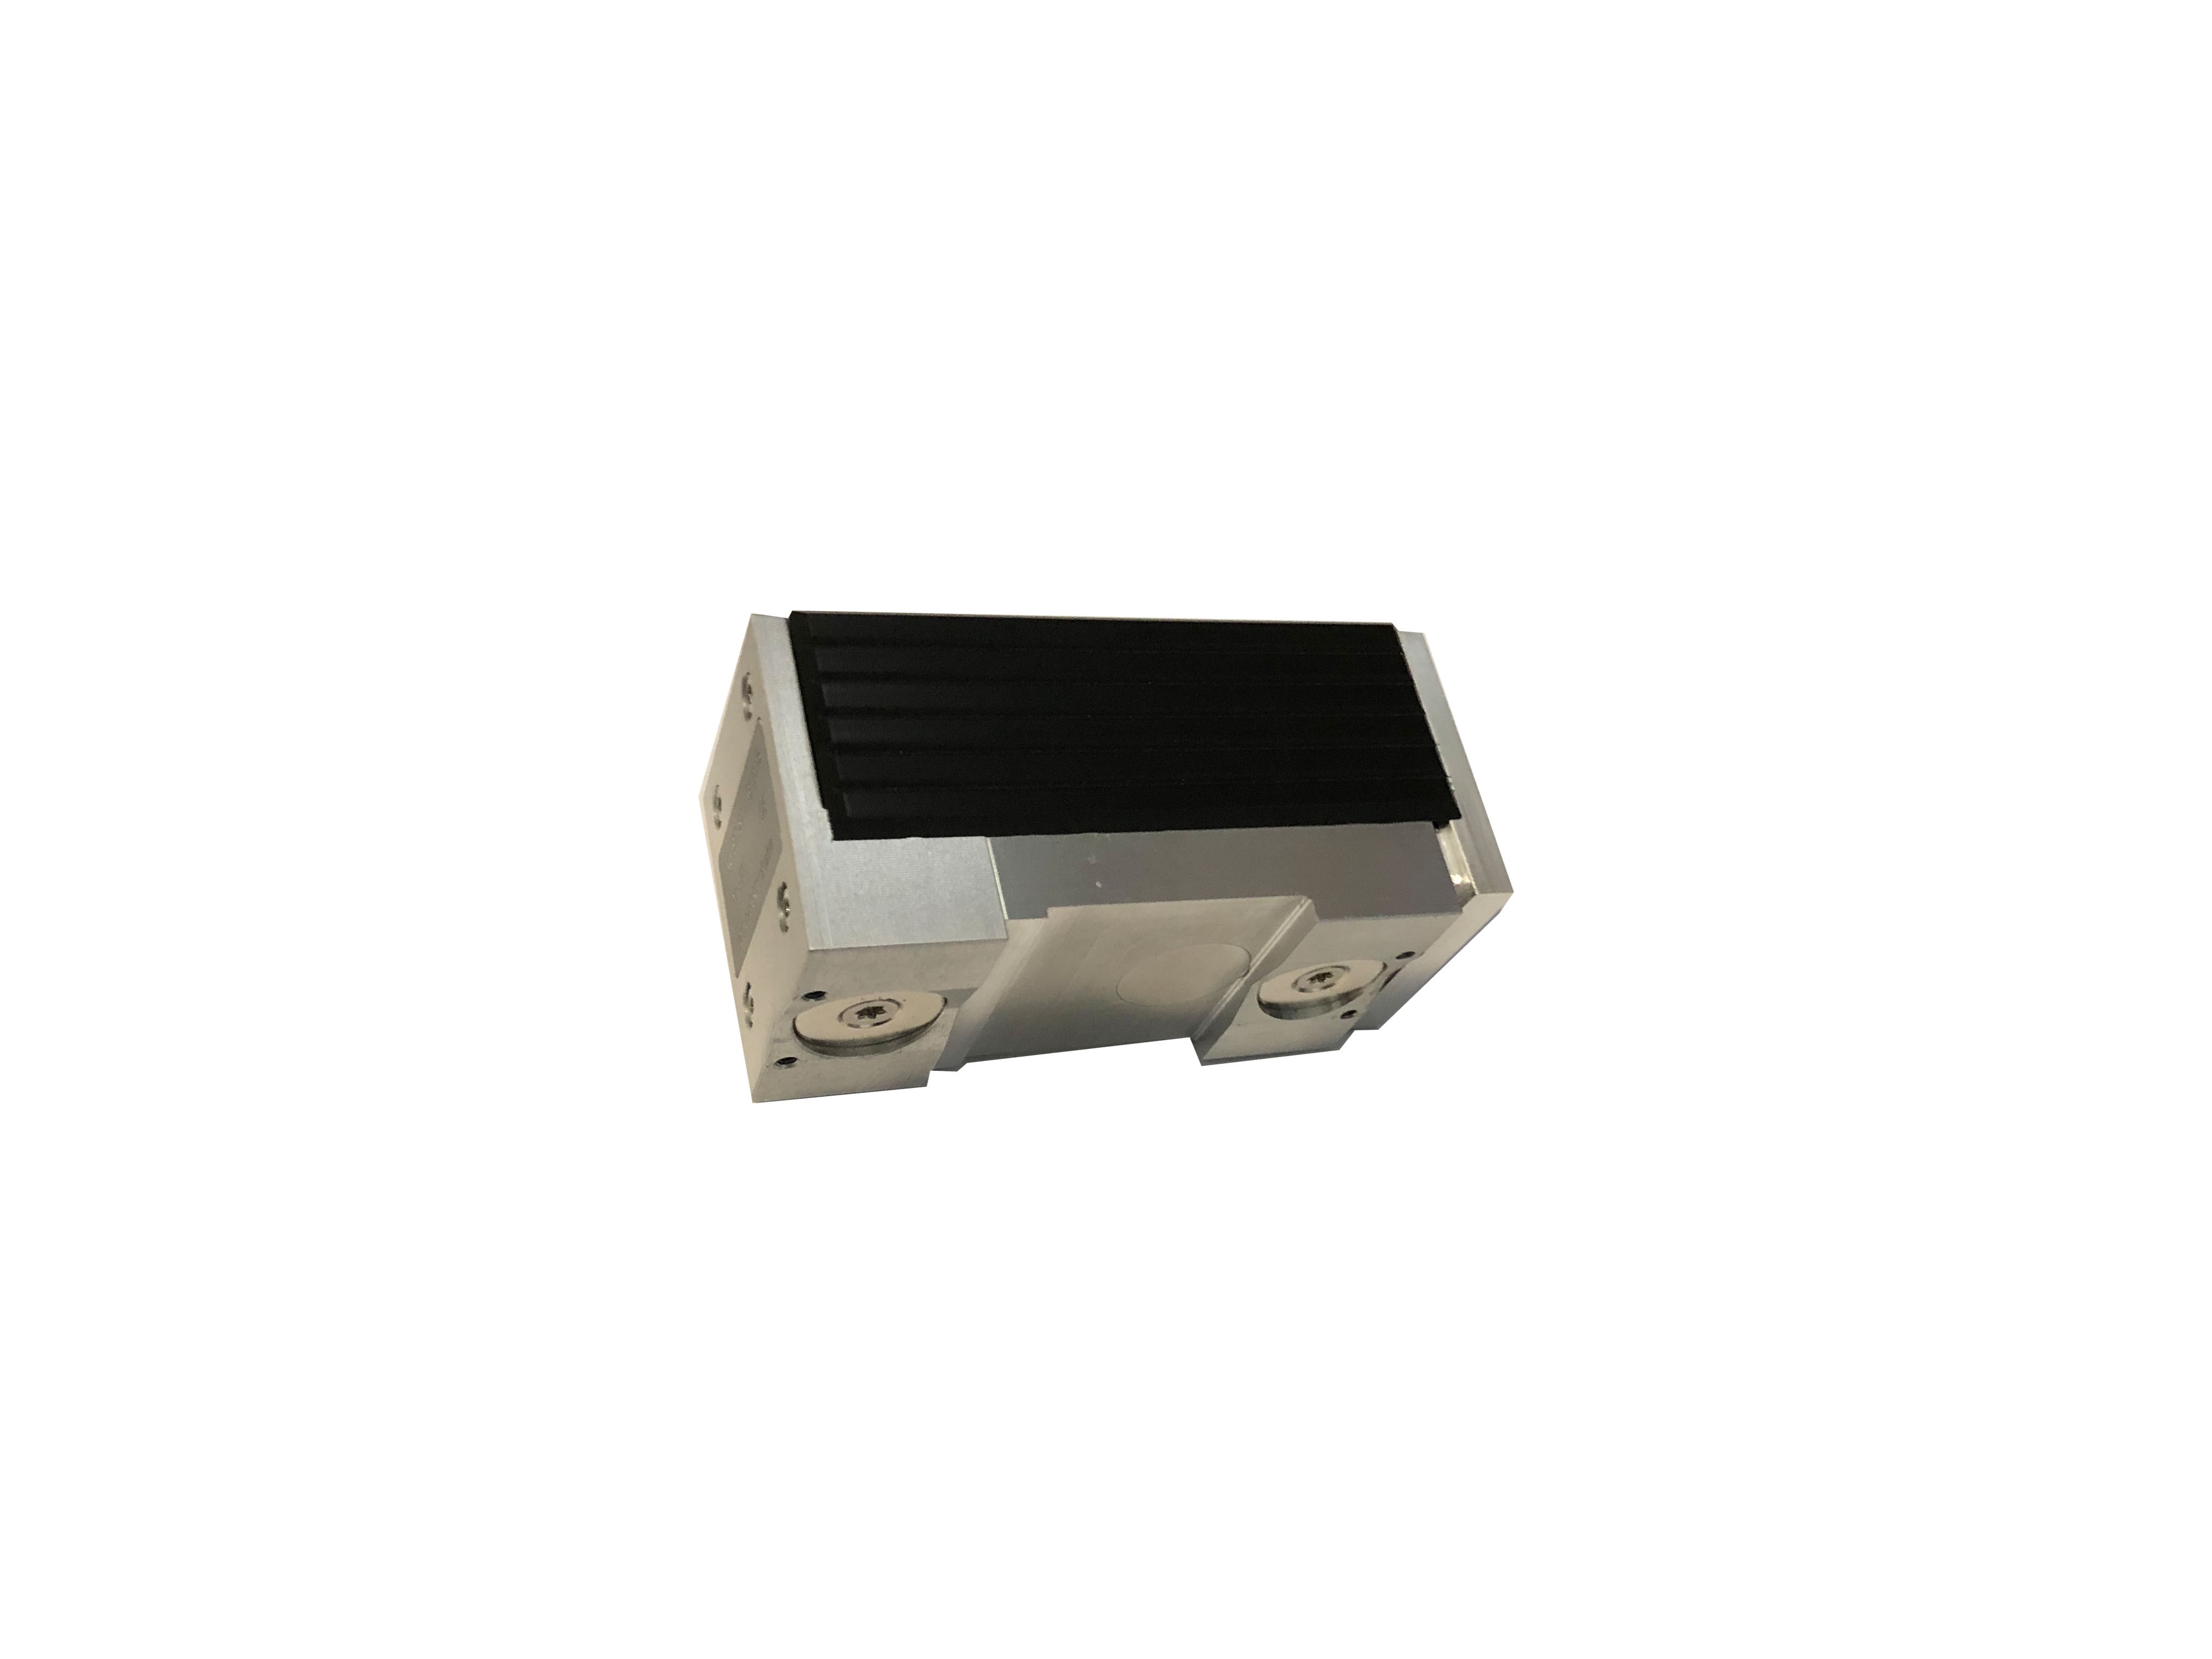 SDM 4000 RS-1 inteligentny system pomiaru prętów wiązałkowych bezprzewodowy